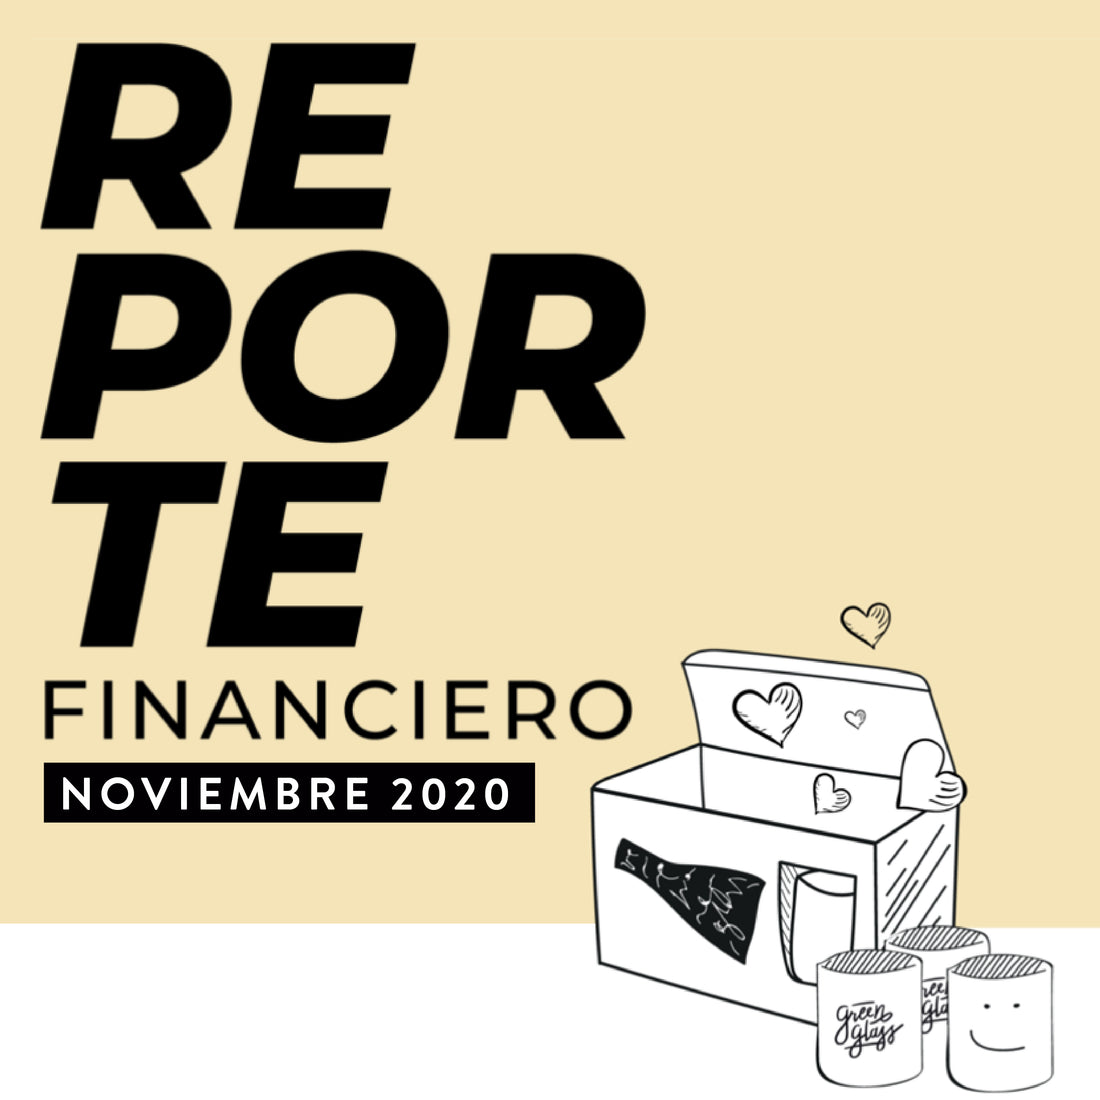 Reporte Financiero Noviembre 2020